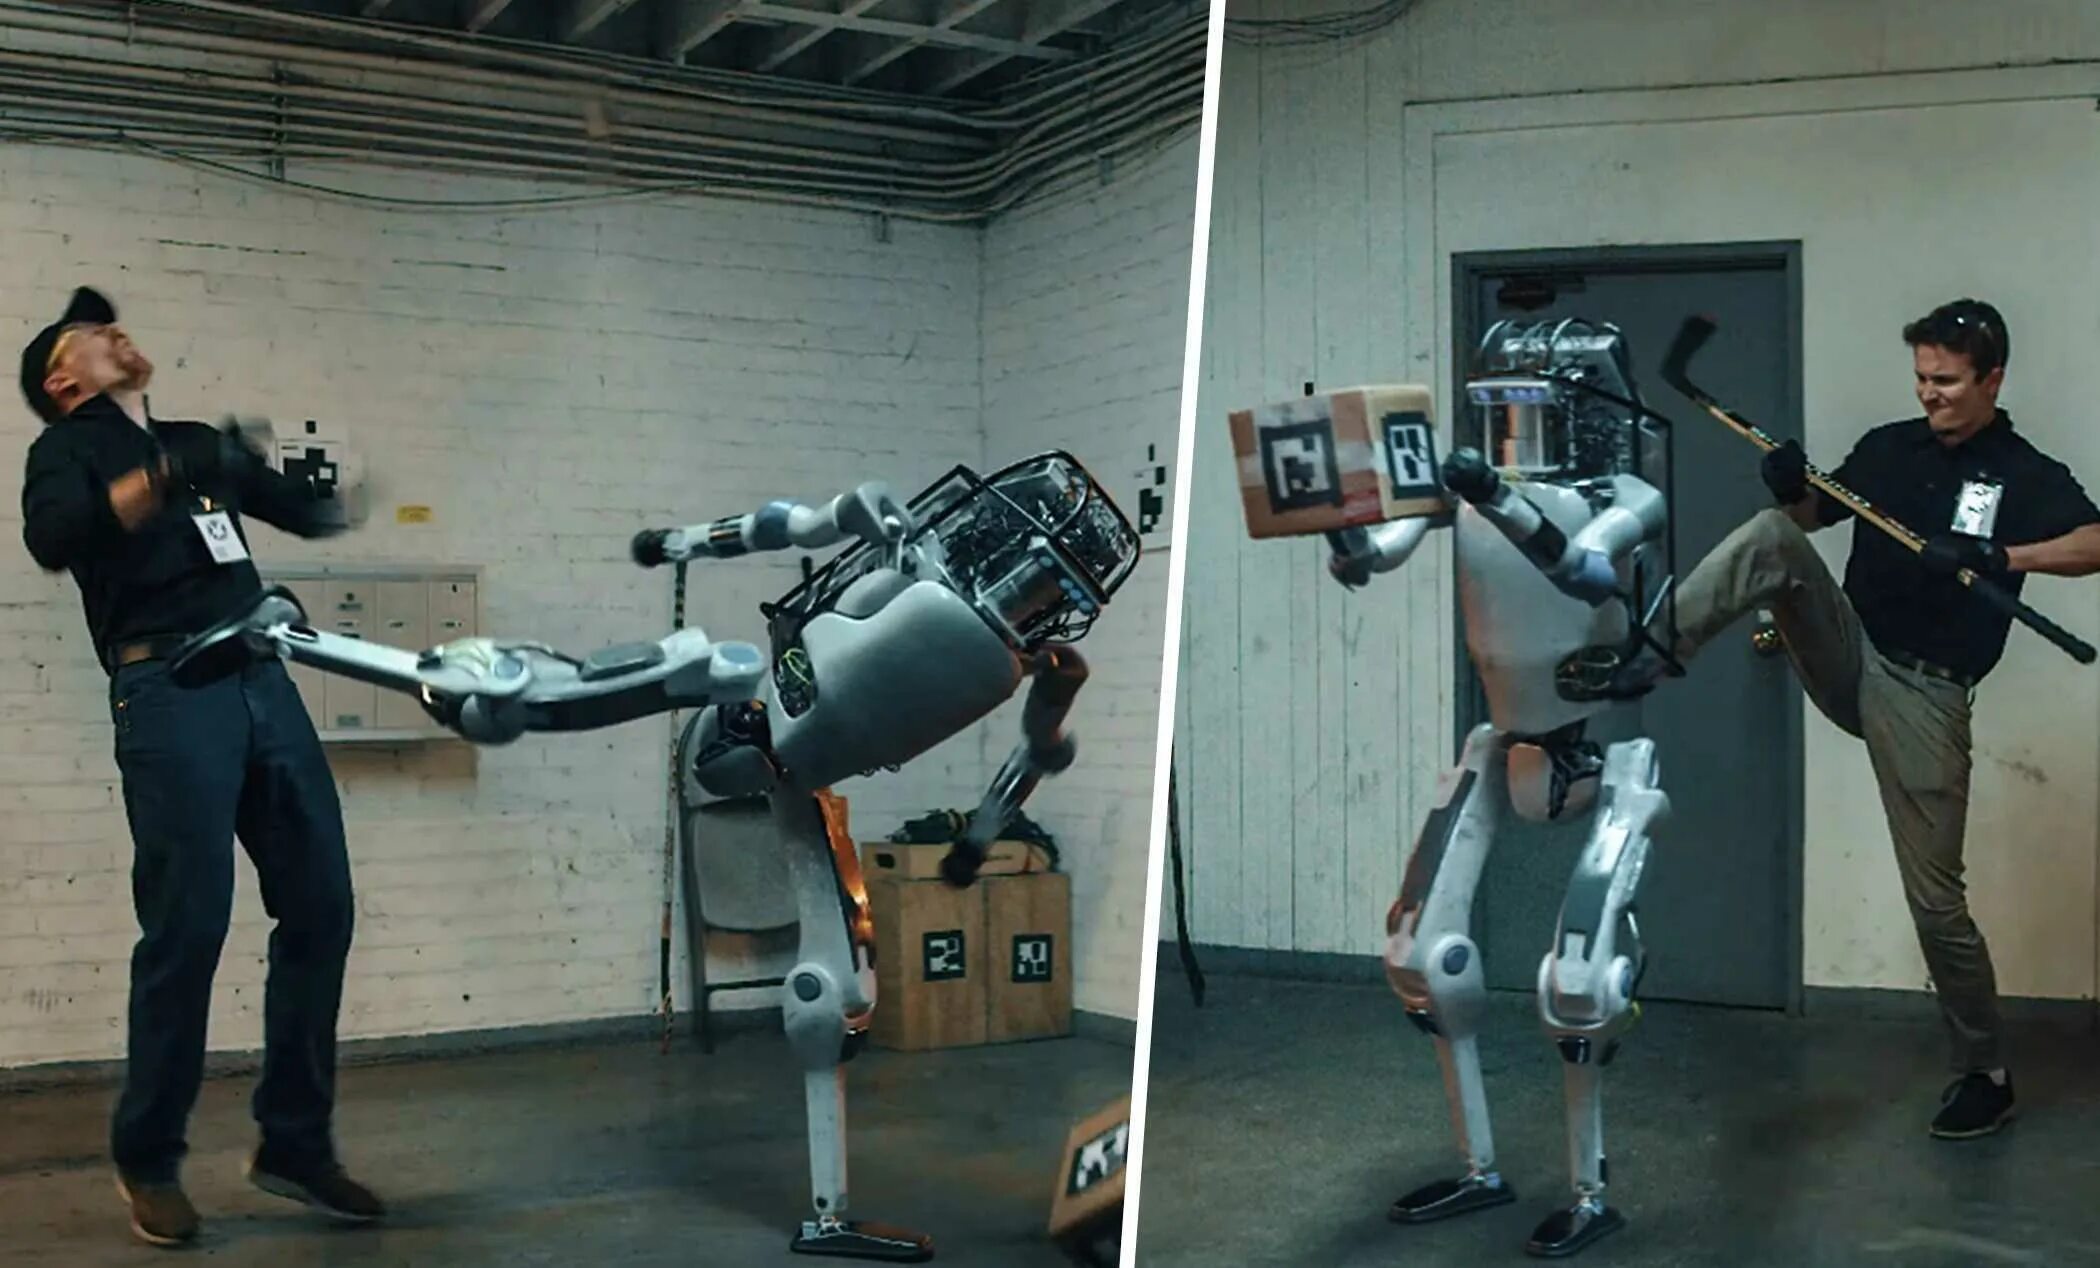 Робот атлас Бостон Динамикс. Бостон Дайнемикс робот и человек. Бостон Дайнемикс боевой робот. Робот Бостон Динамикс с коробкой. Обычного человека сделают роботом